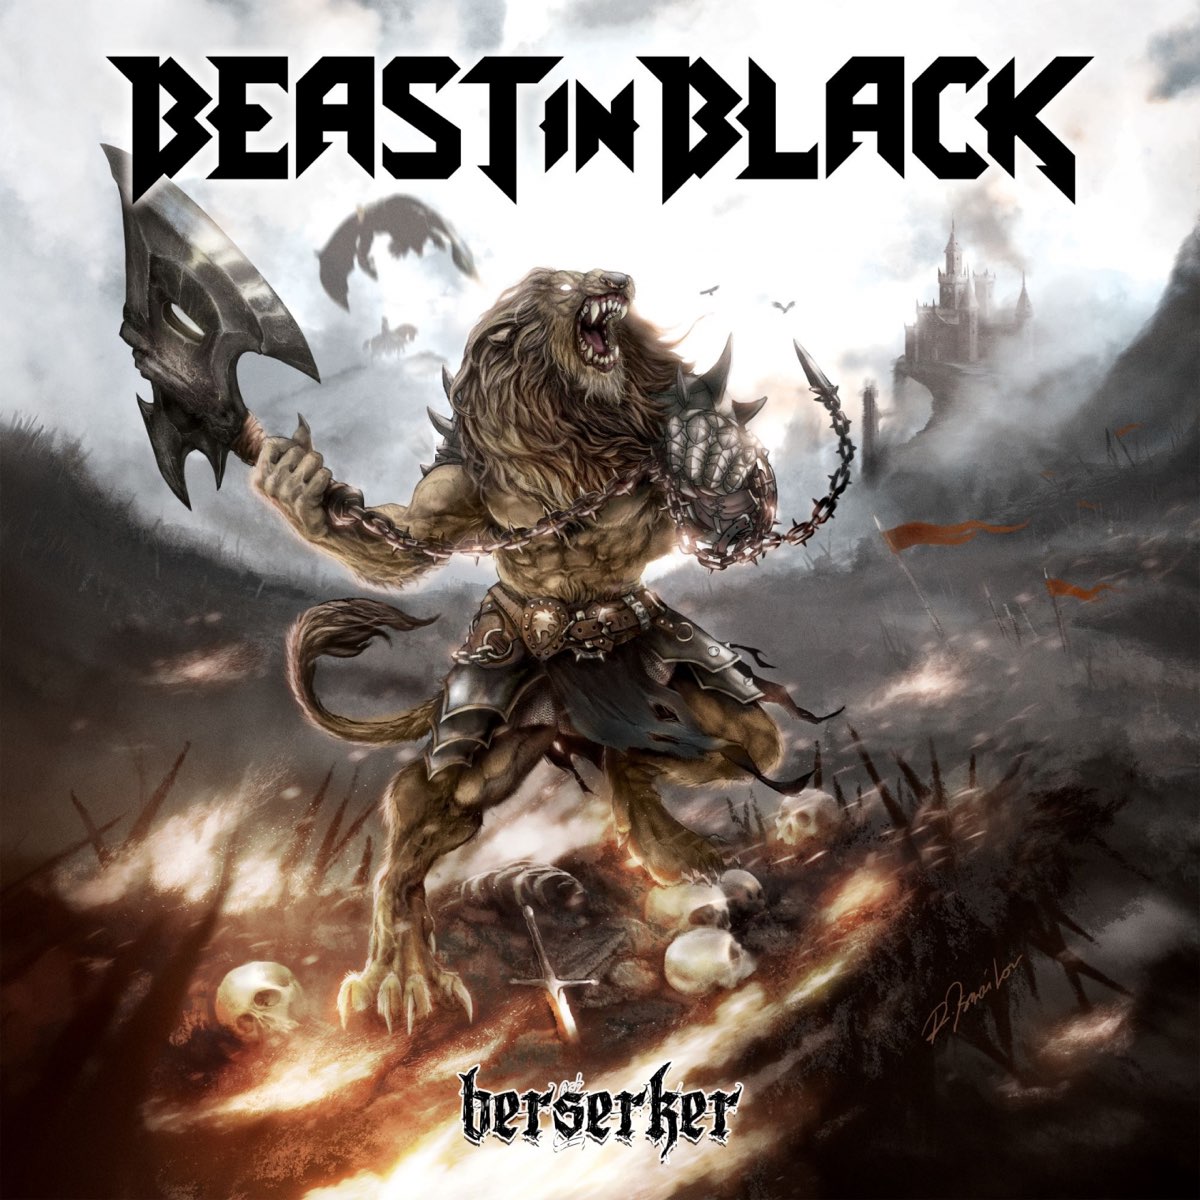 Berserker - Album by Beast in Black - Apple Music